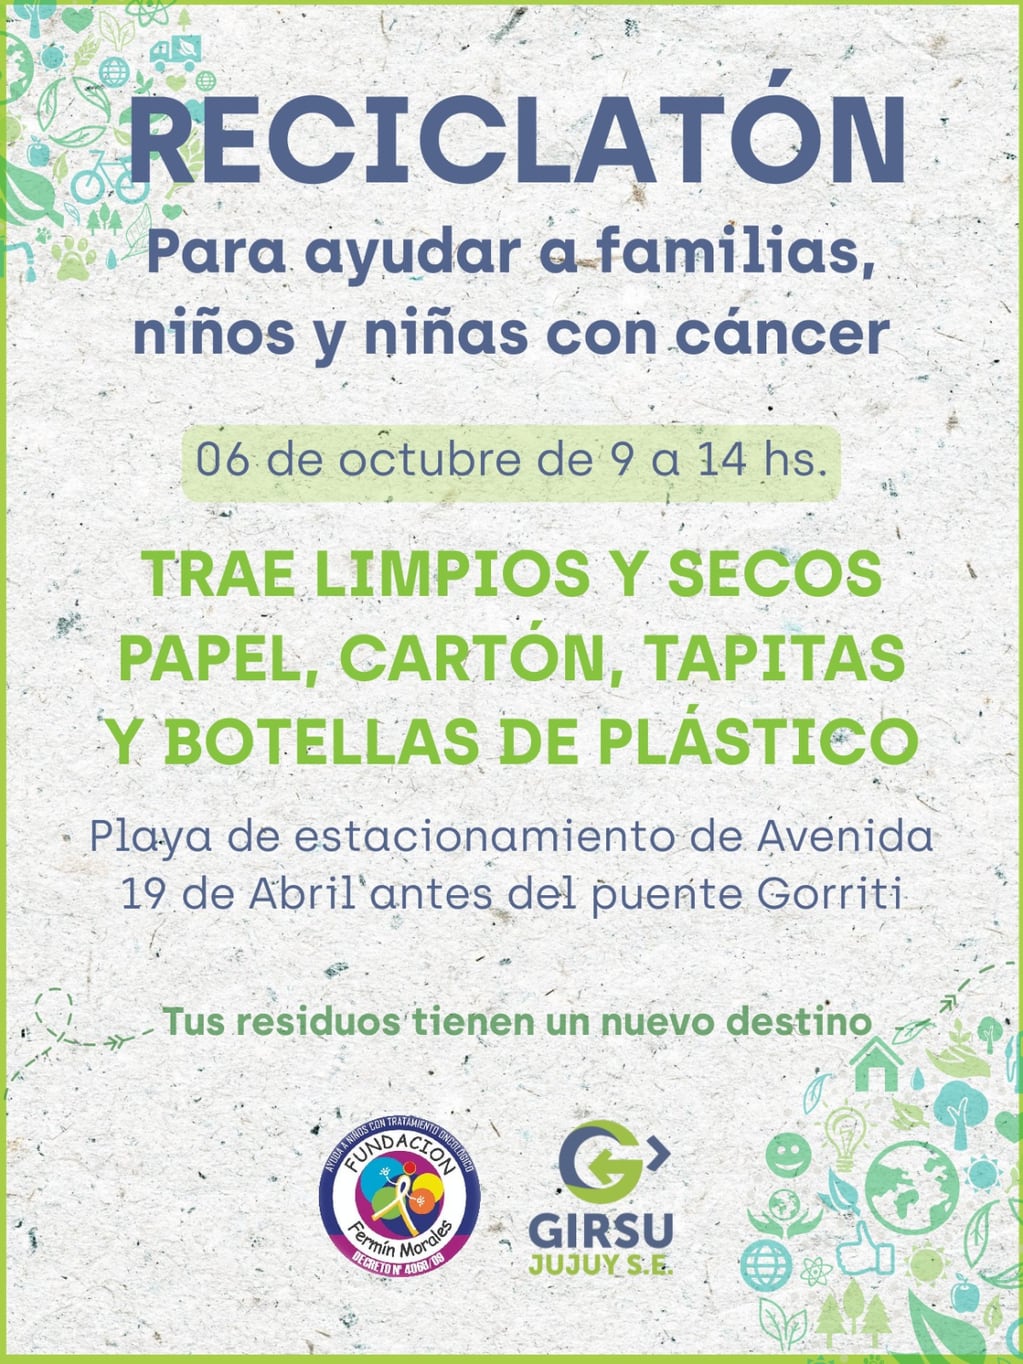 Un nuevo "Reciclatón" de GIRSU Jujuy en conjunto con la fundación "Fermín Morales", se realizará este viernes.